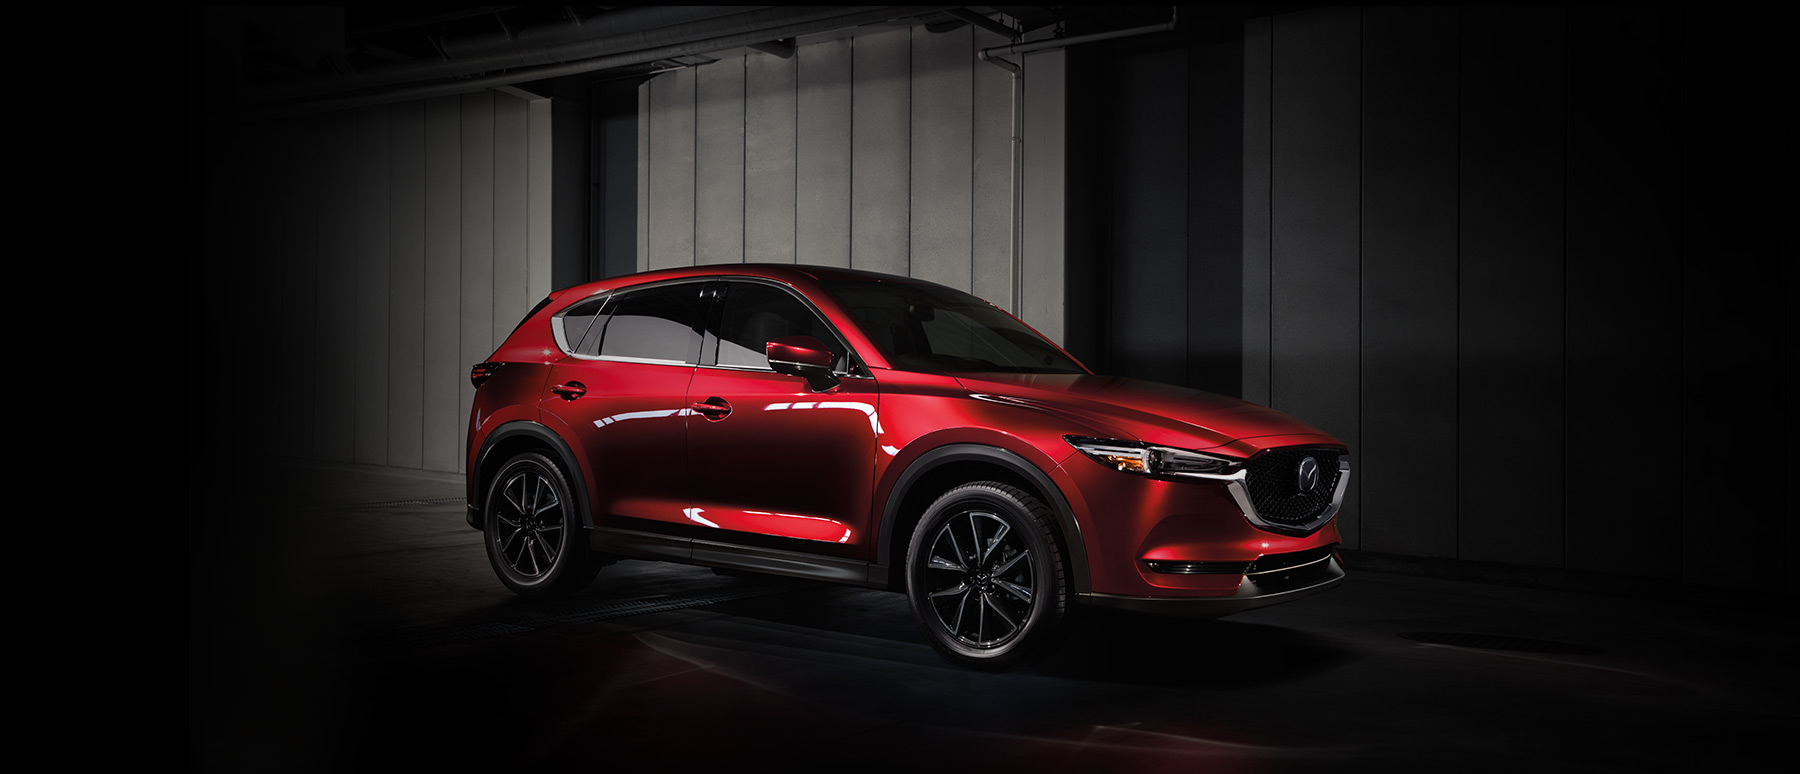 Mazda CX-5 Diesel 2017